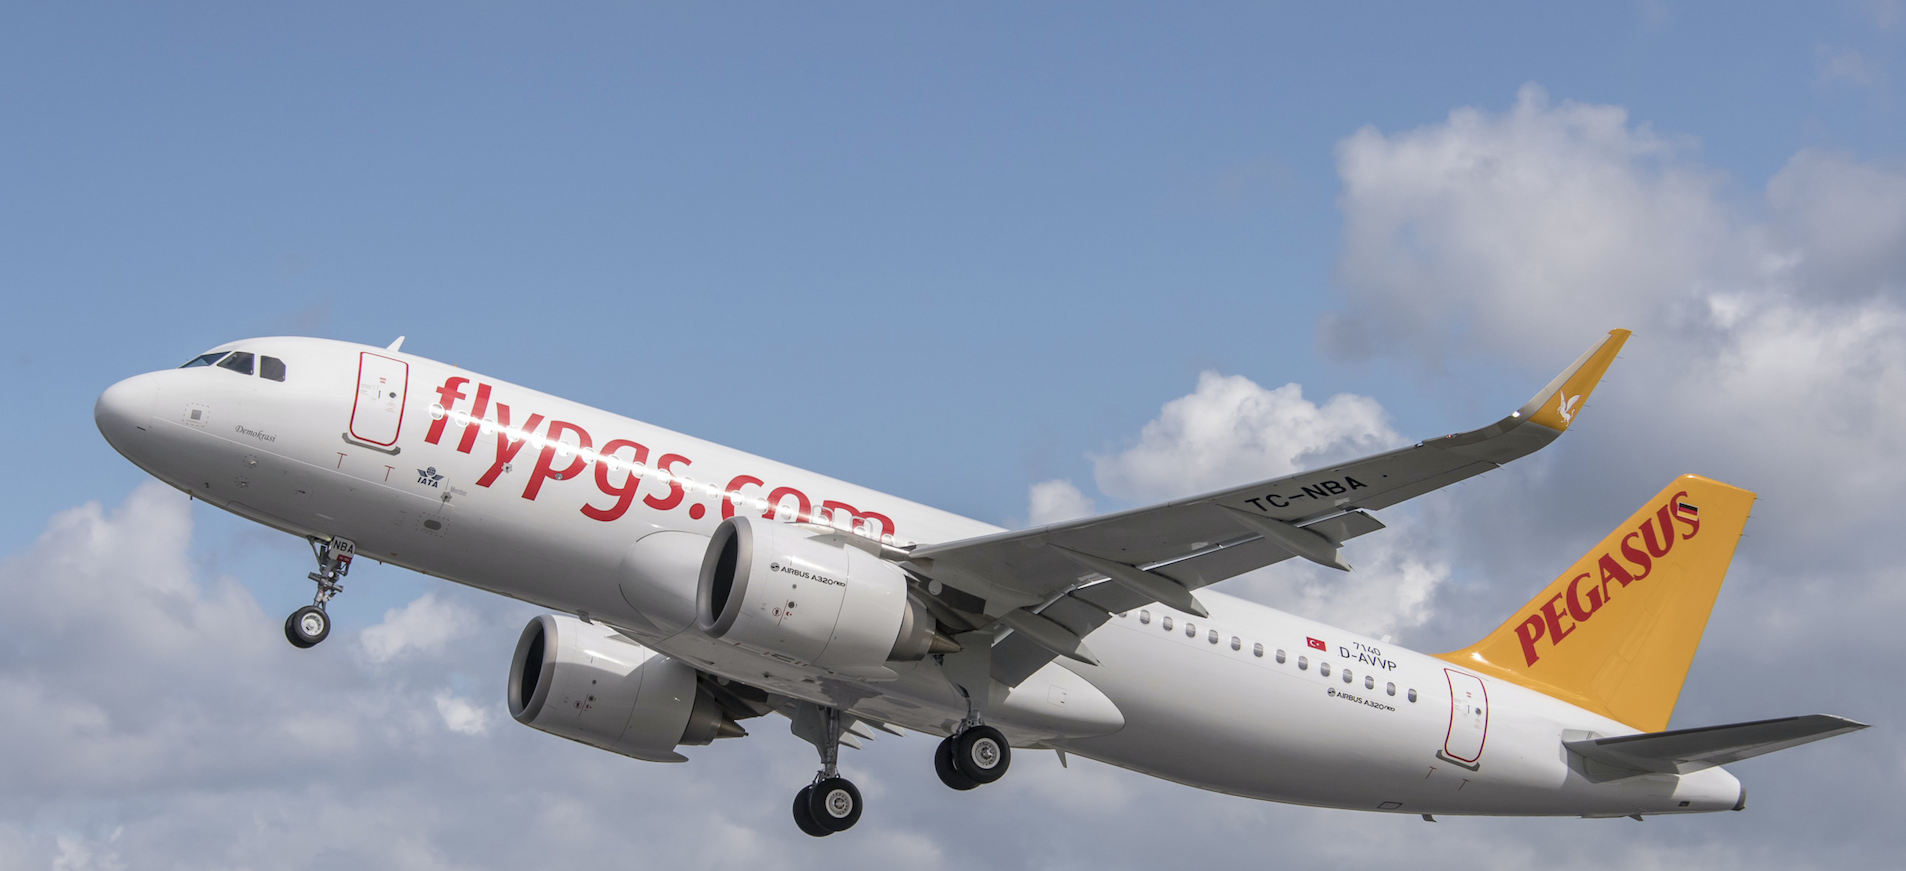 Pegasus Airlines a vu ses revenus et le nombre de ses passagers augmenter au cours du premier semestre 2016 - Photo : Pegasus Airlines